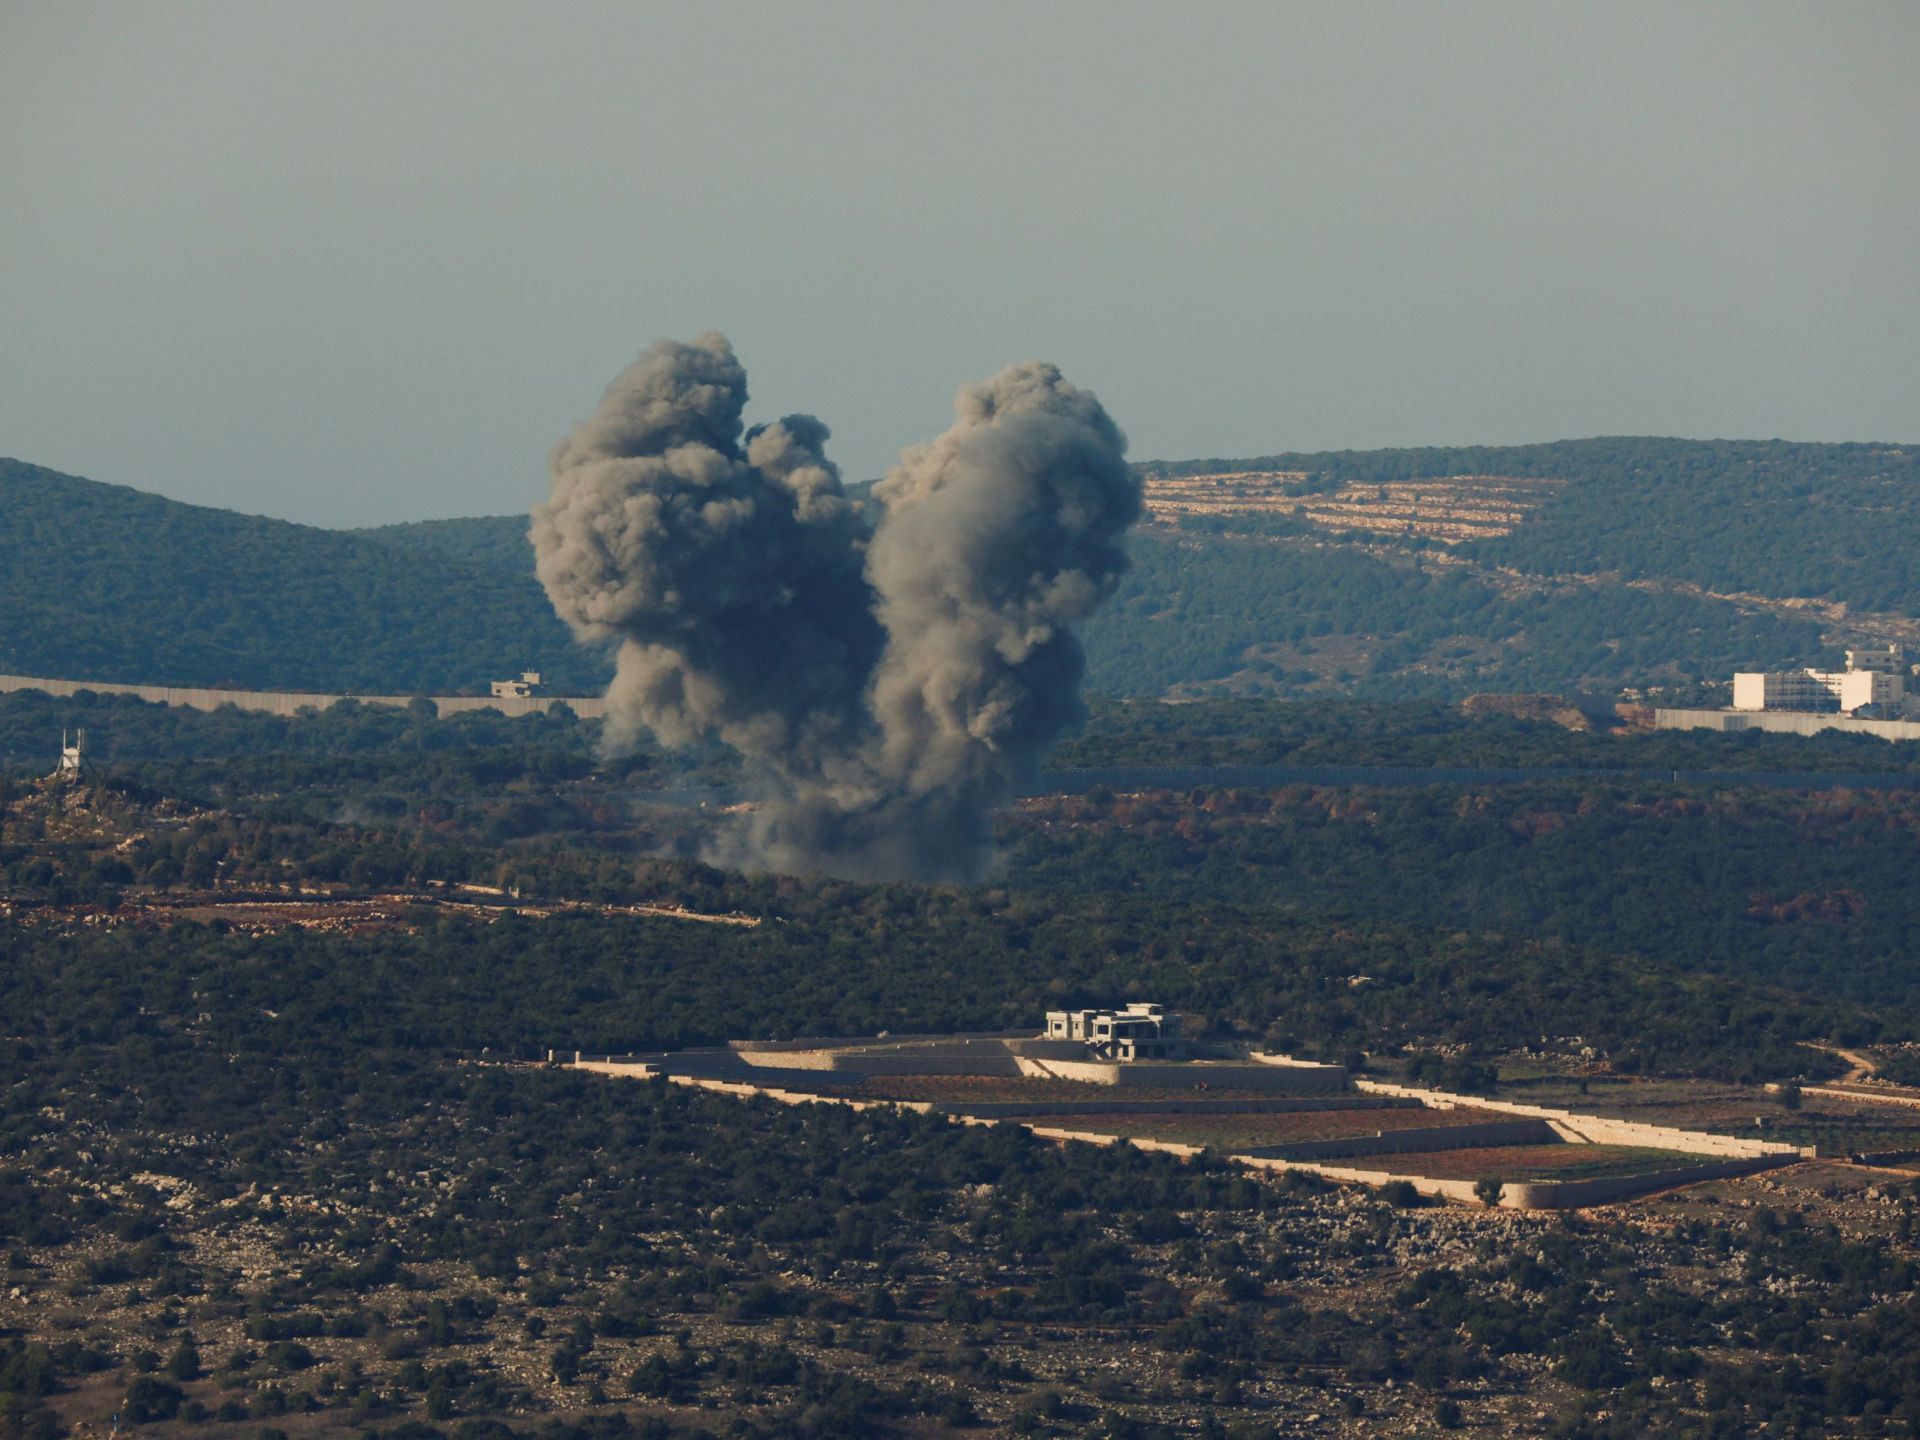 حزب الله يهاجم 8 مواقع حدودية ونجاة قائد إسرائيلي من هجوم صاروخي | أخبار – البوكس نيوز